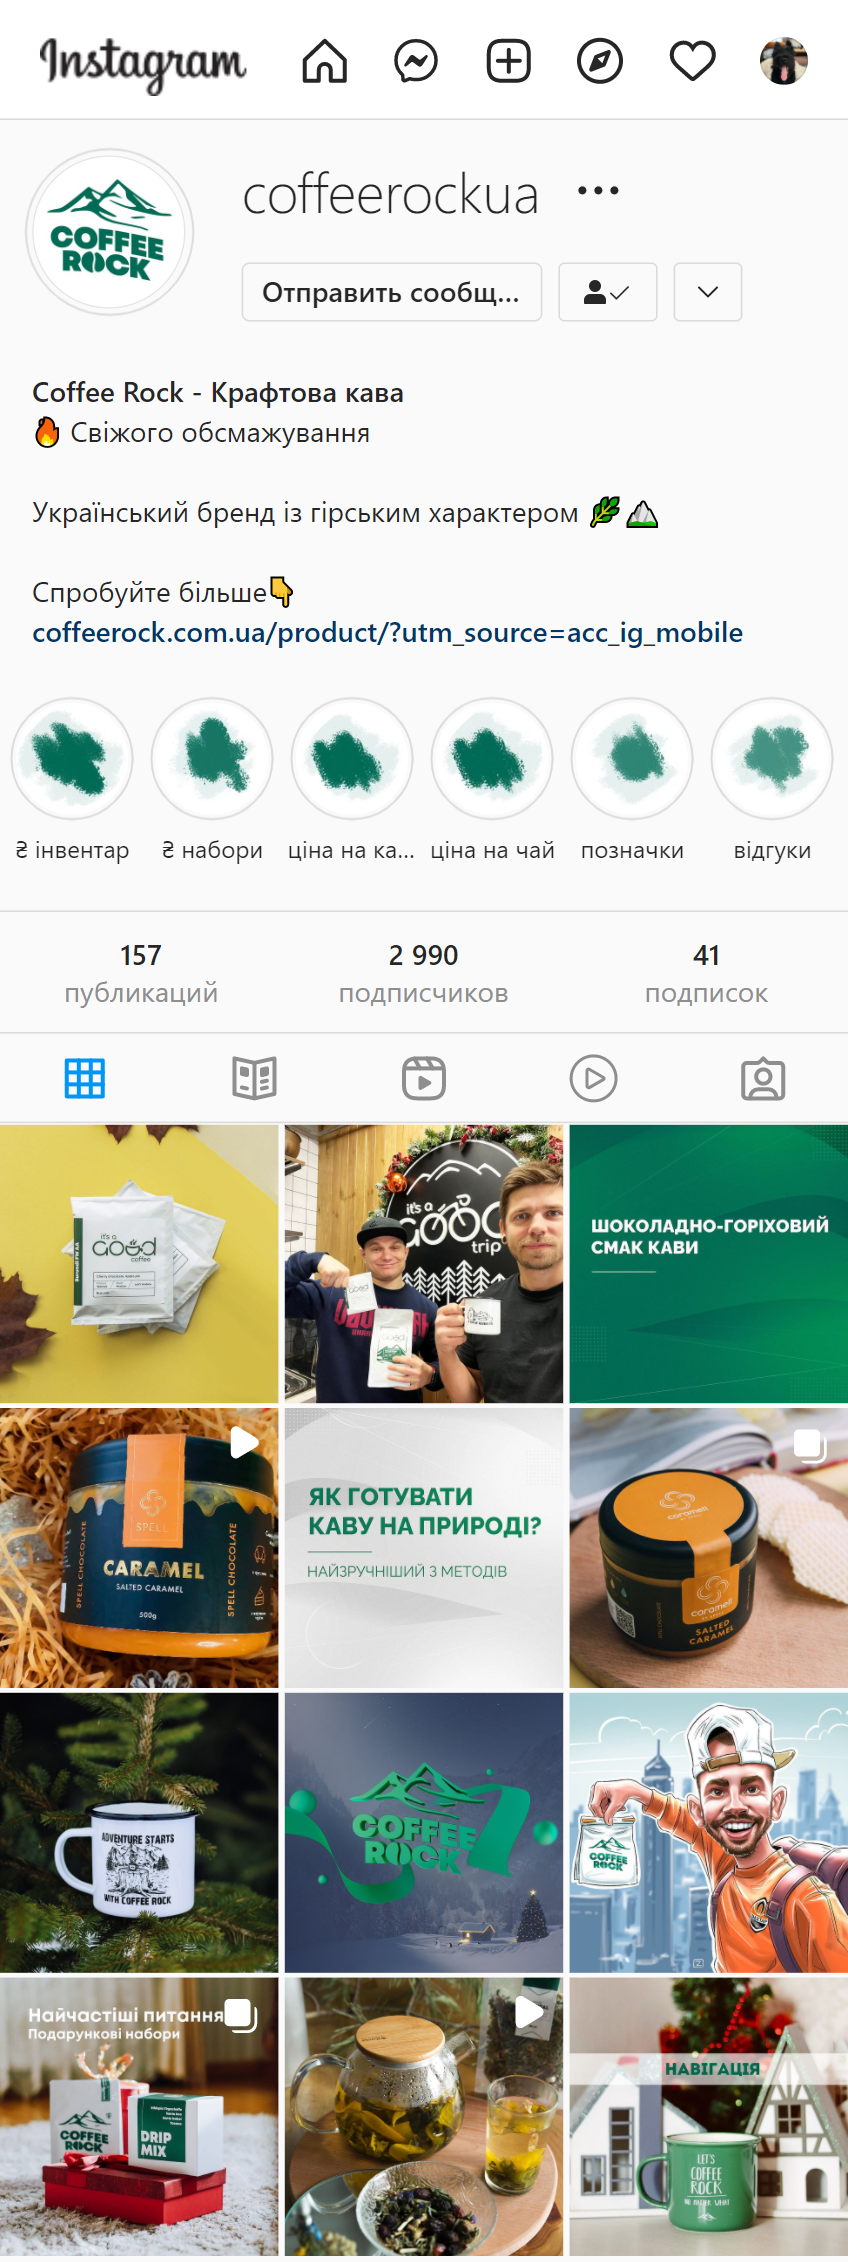 Оформление страницы интернет-магазина Coffee Rock в Instagram